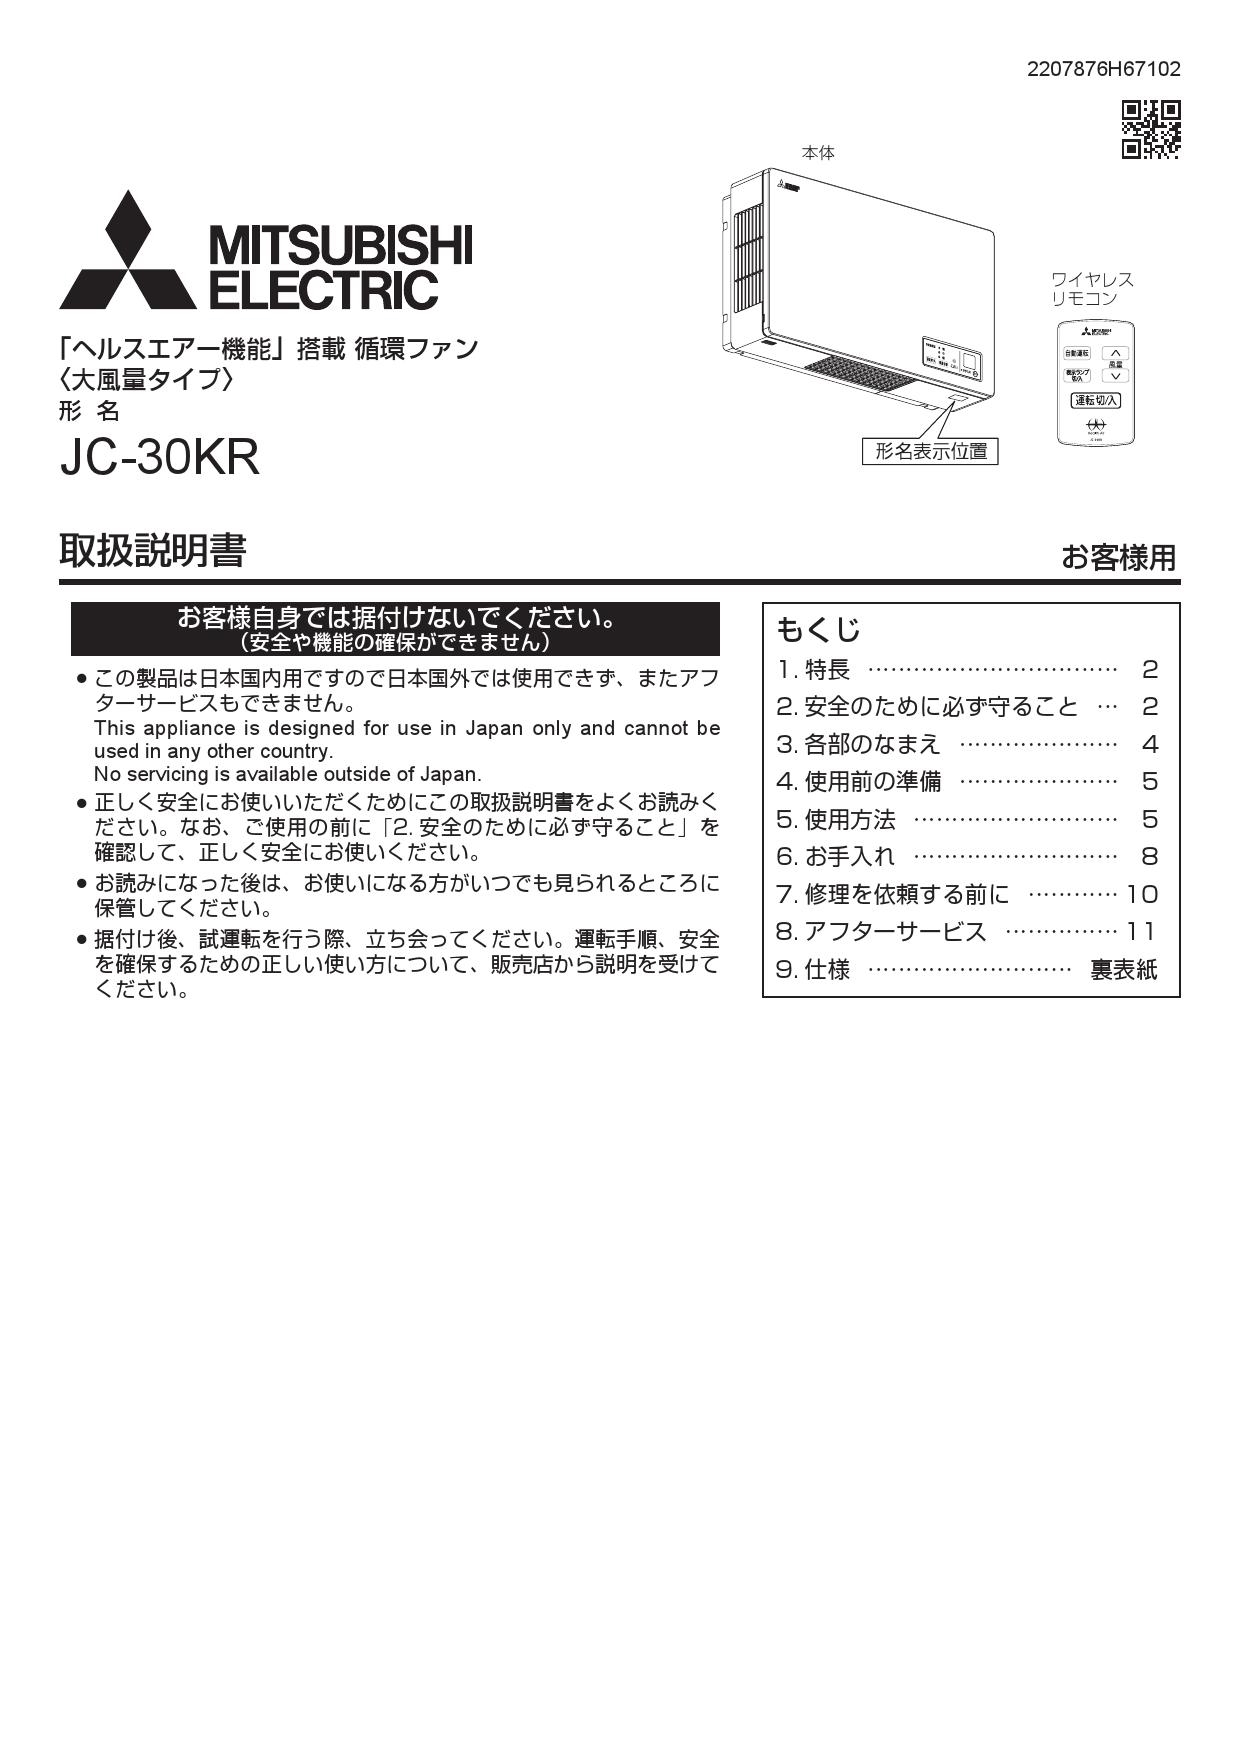 人気急上昇 JC-30KR 三菱電機 循環ファン 30畳用 壁掛タイプ ヘルスエアー機能搭載 クールホワイト